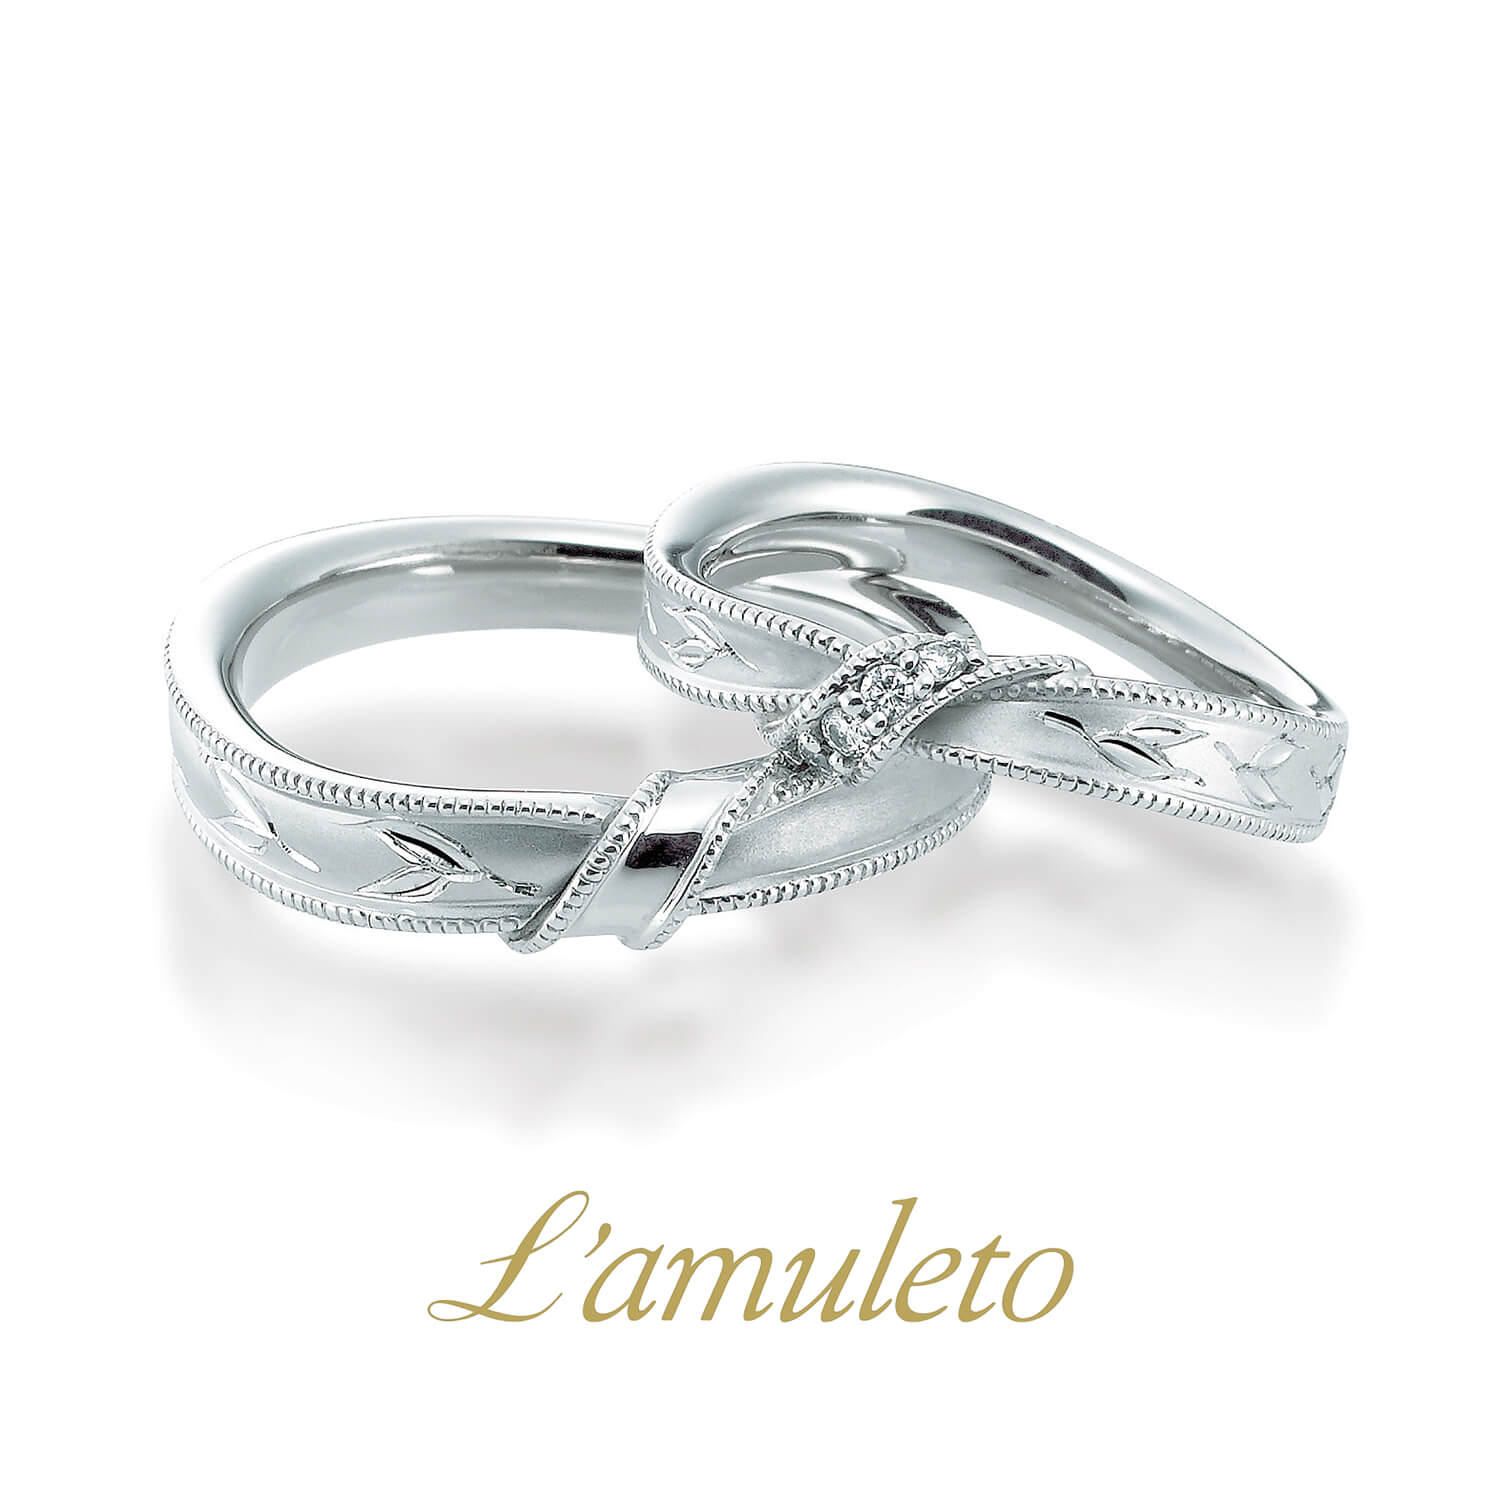 L'amuletoラムレートの結婚指輪Olivoオリボ